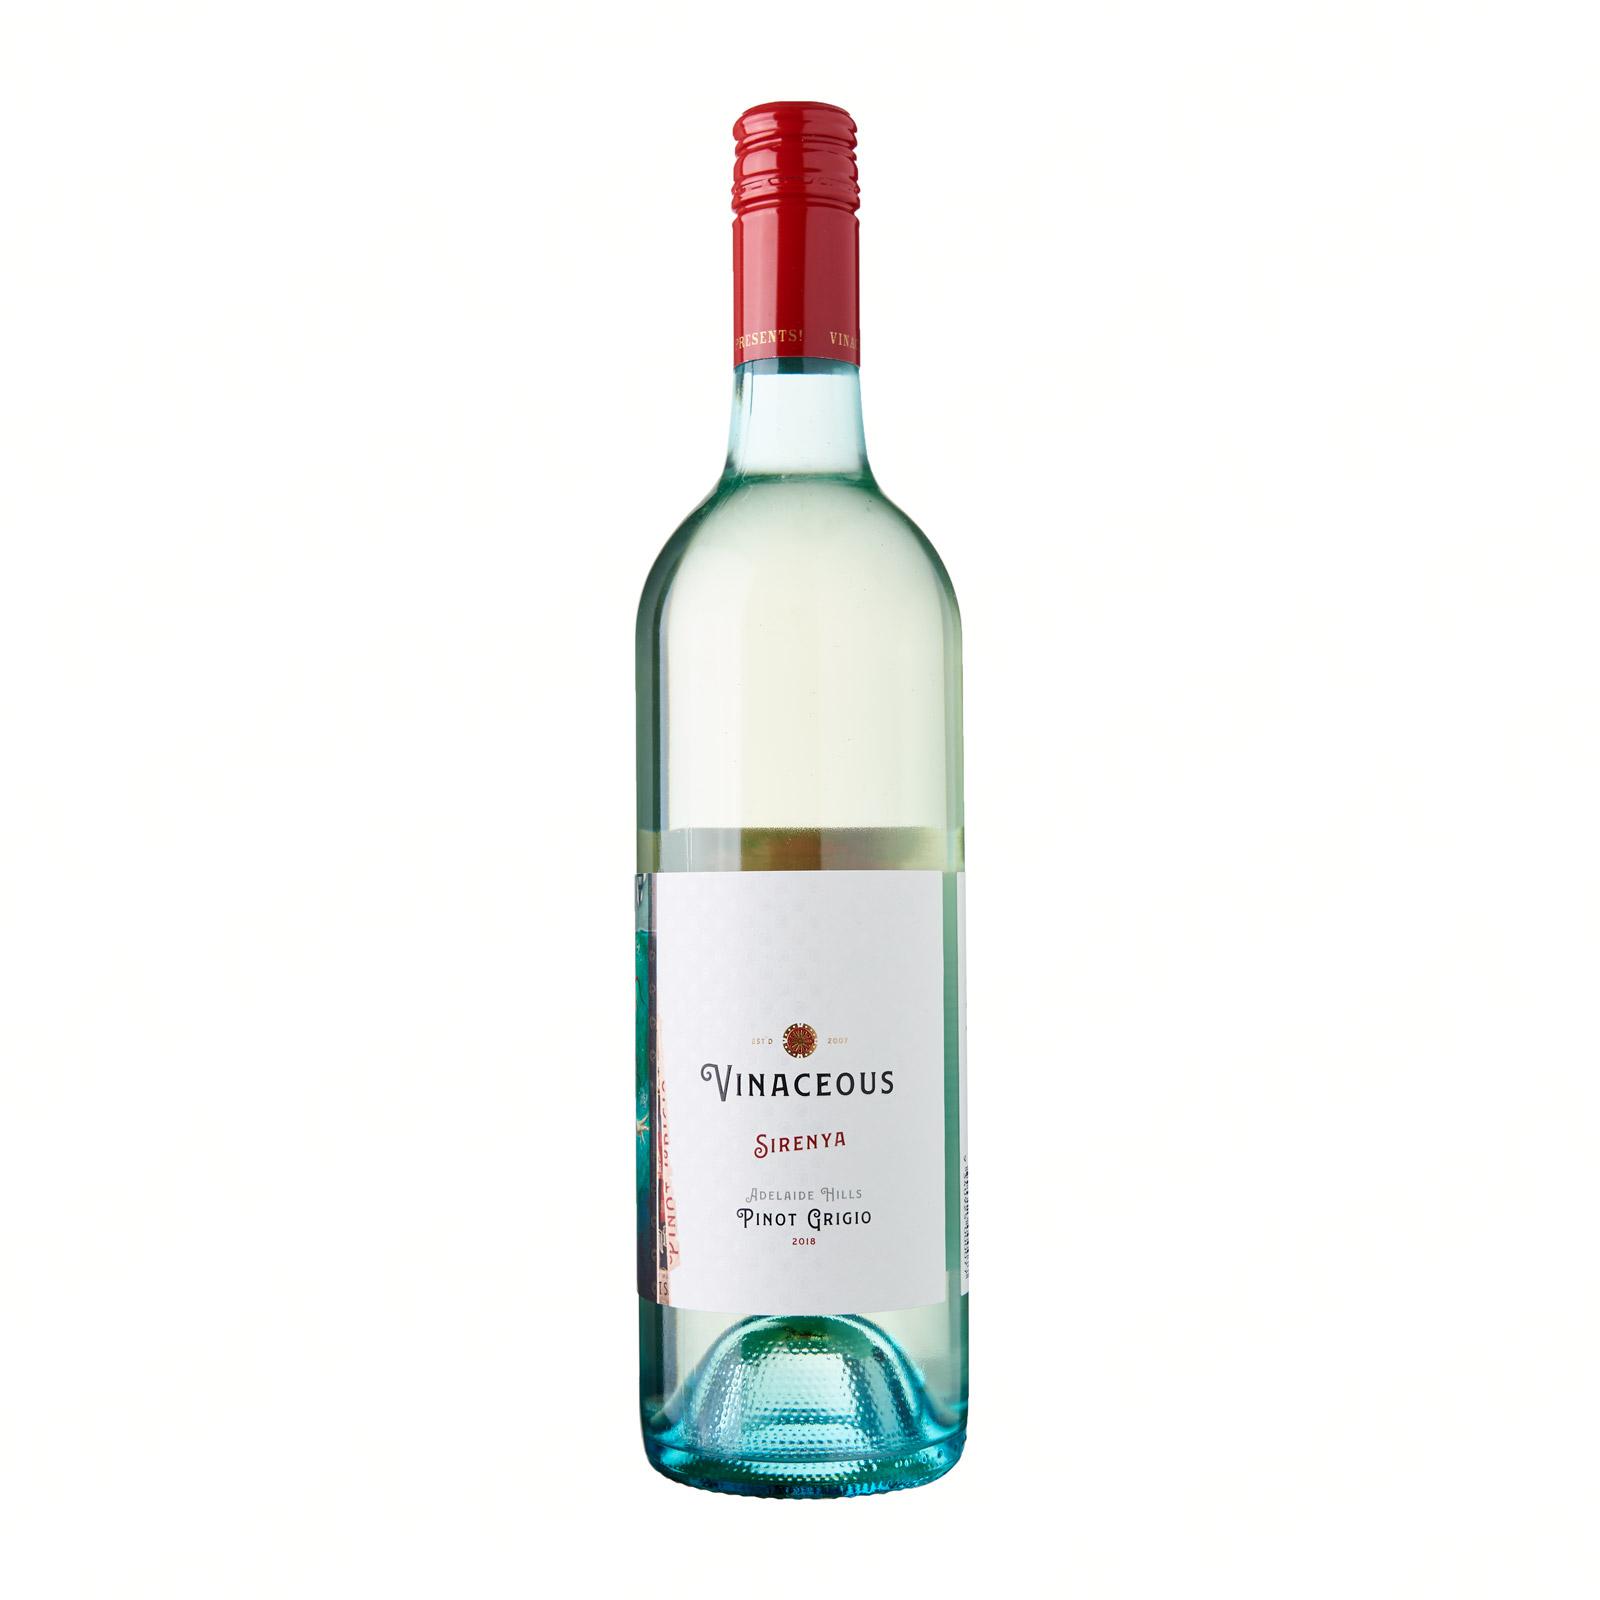 Vinaceous Sirenya Pinot Grigio White Wine – Adelaide Hills, Australia